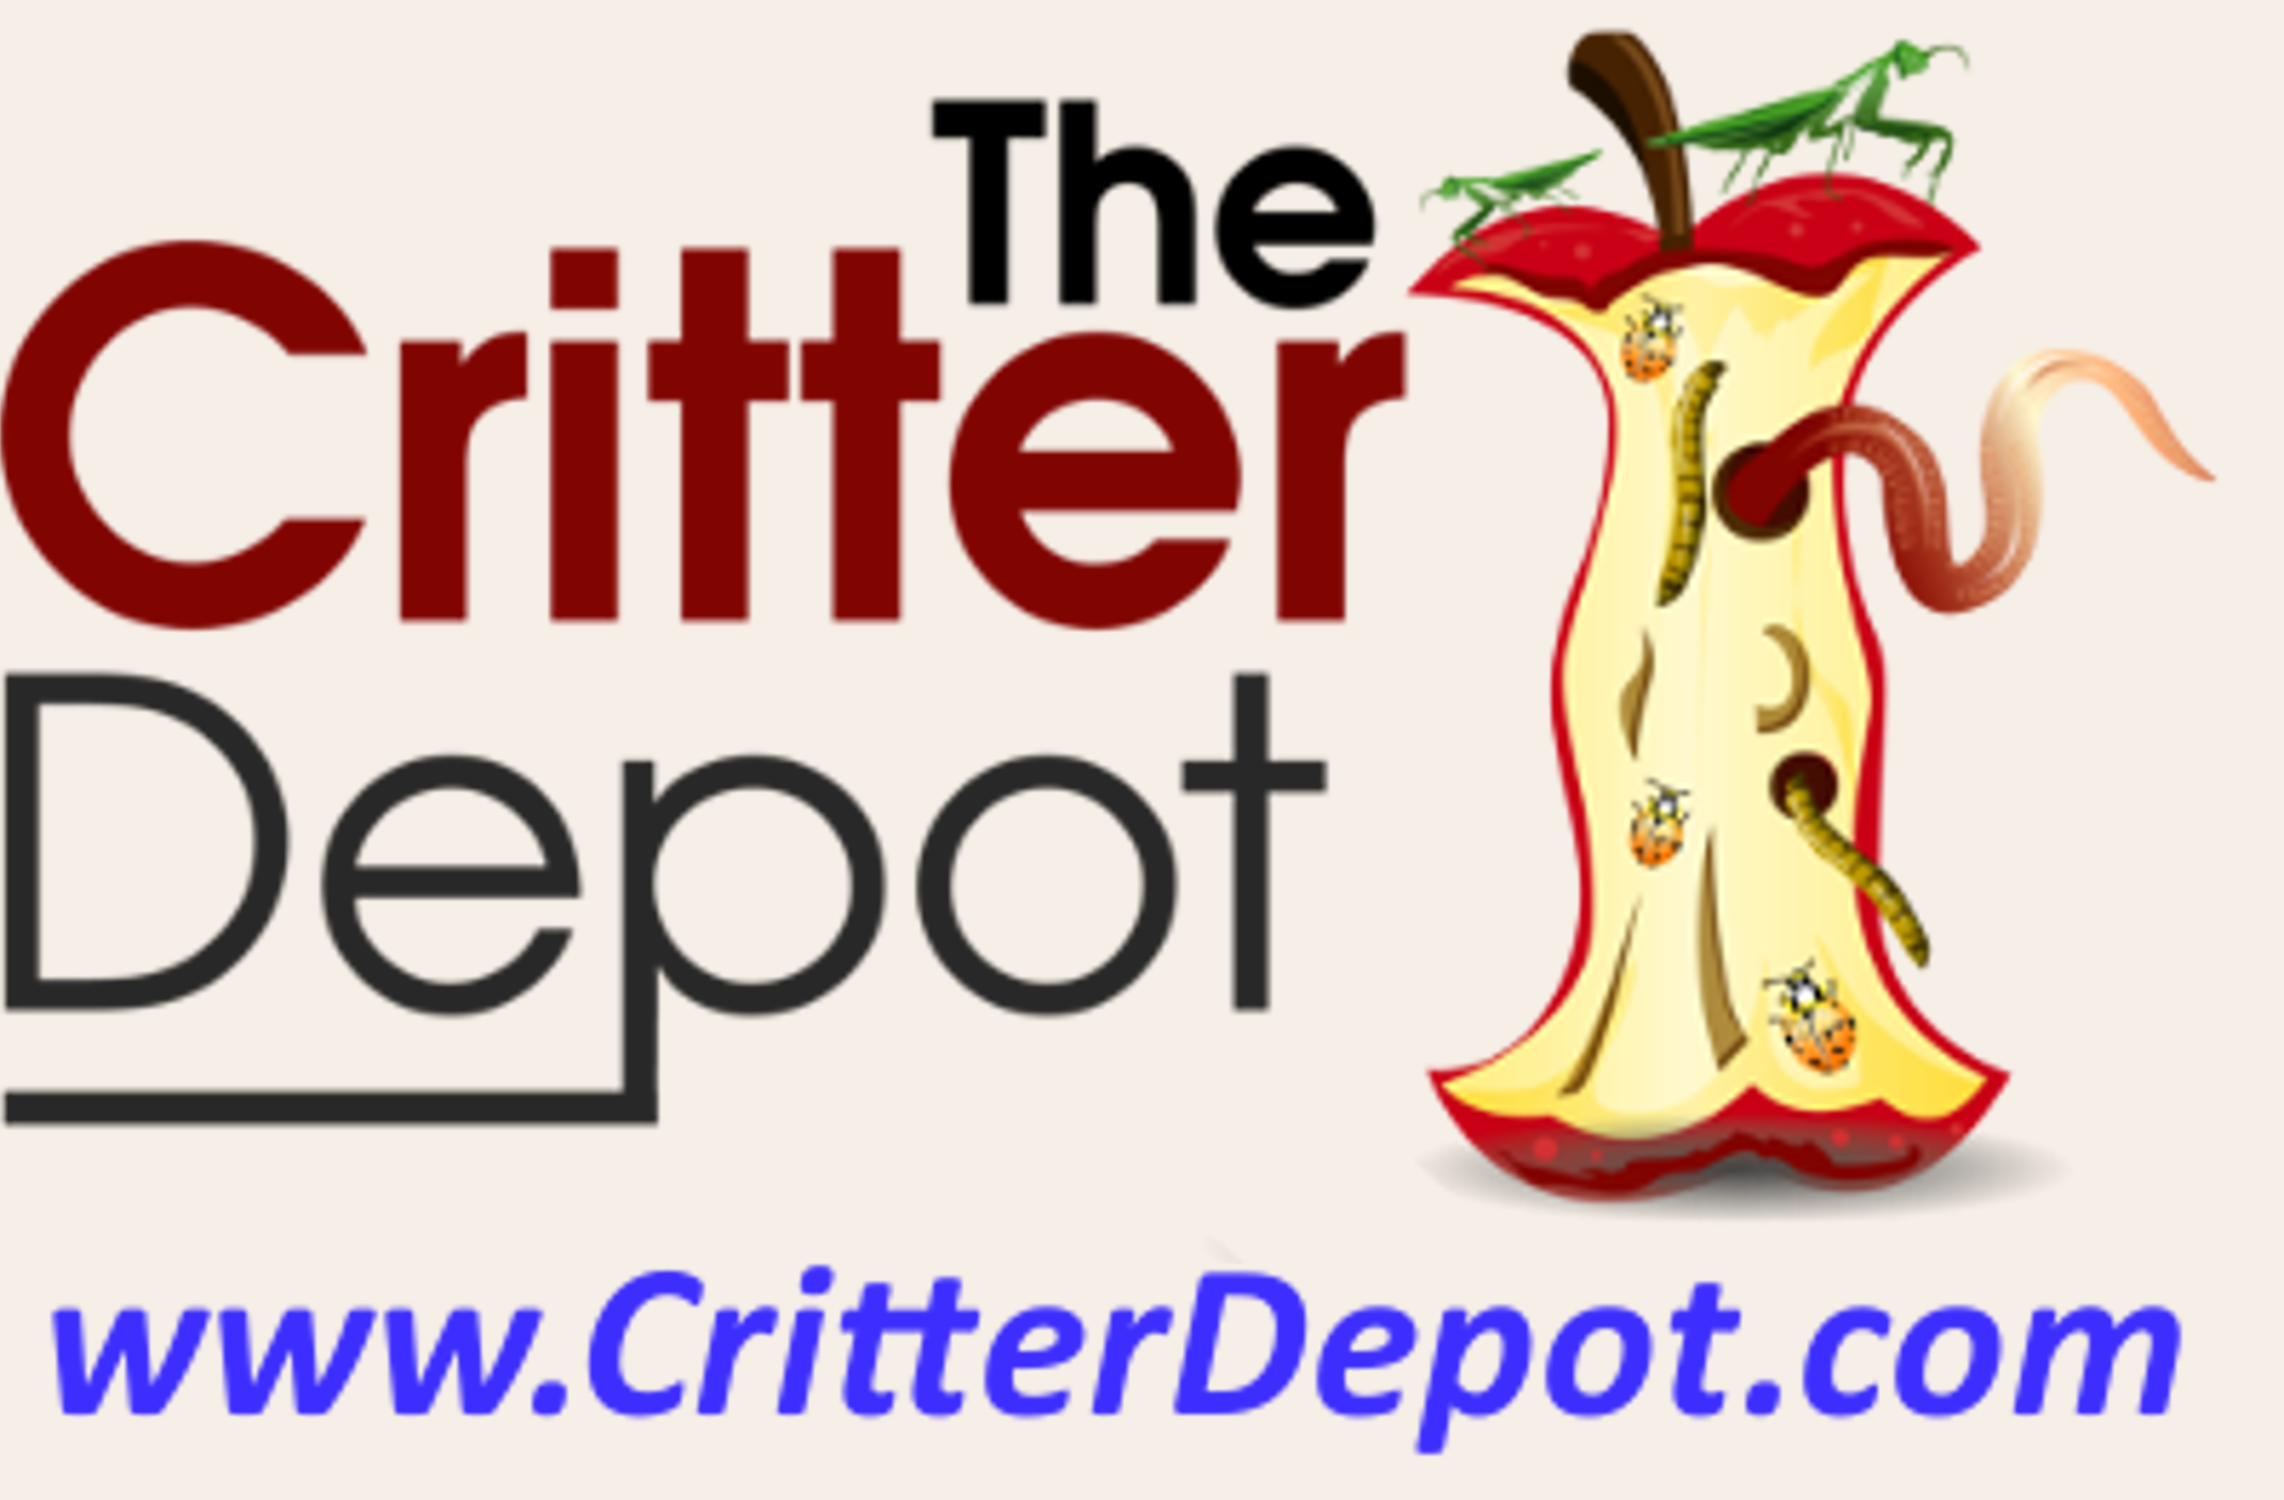 Critter Depot logo